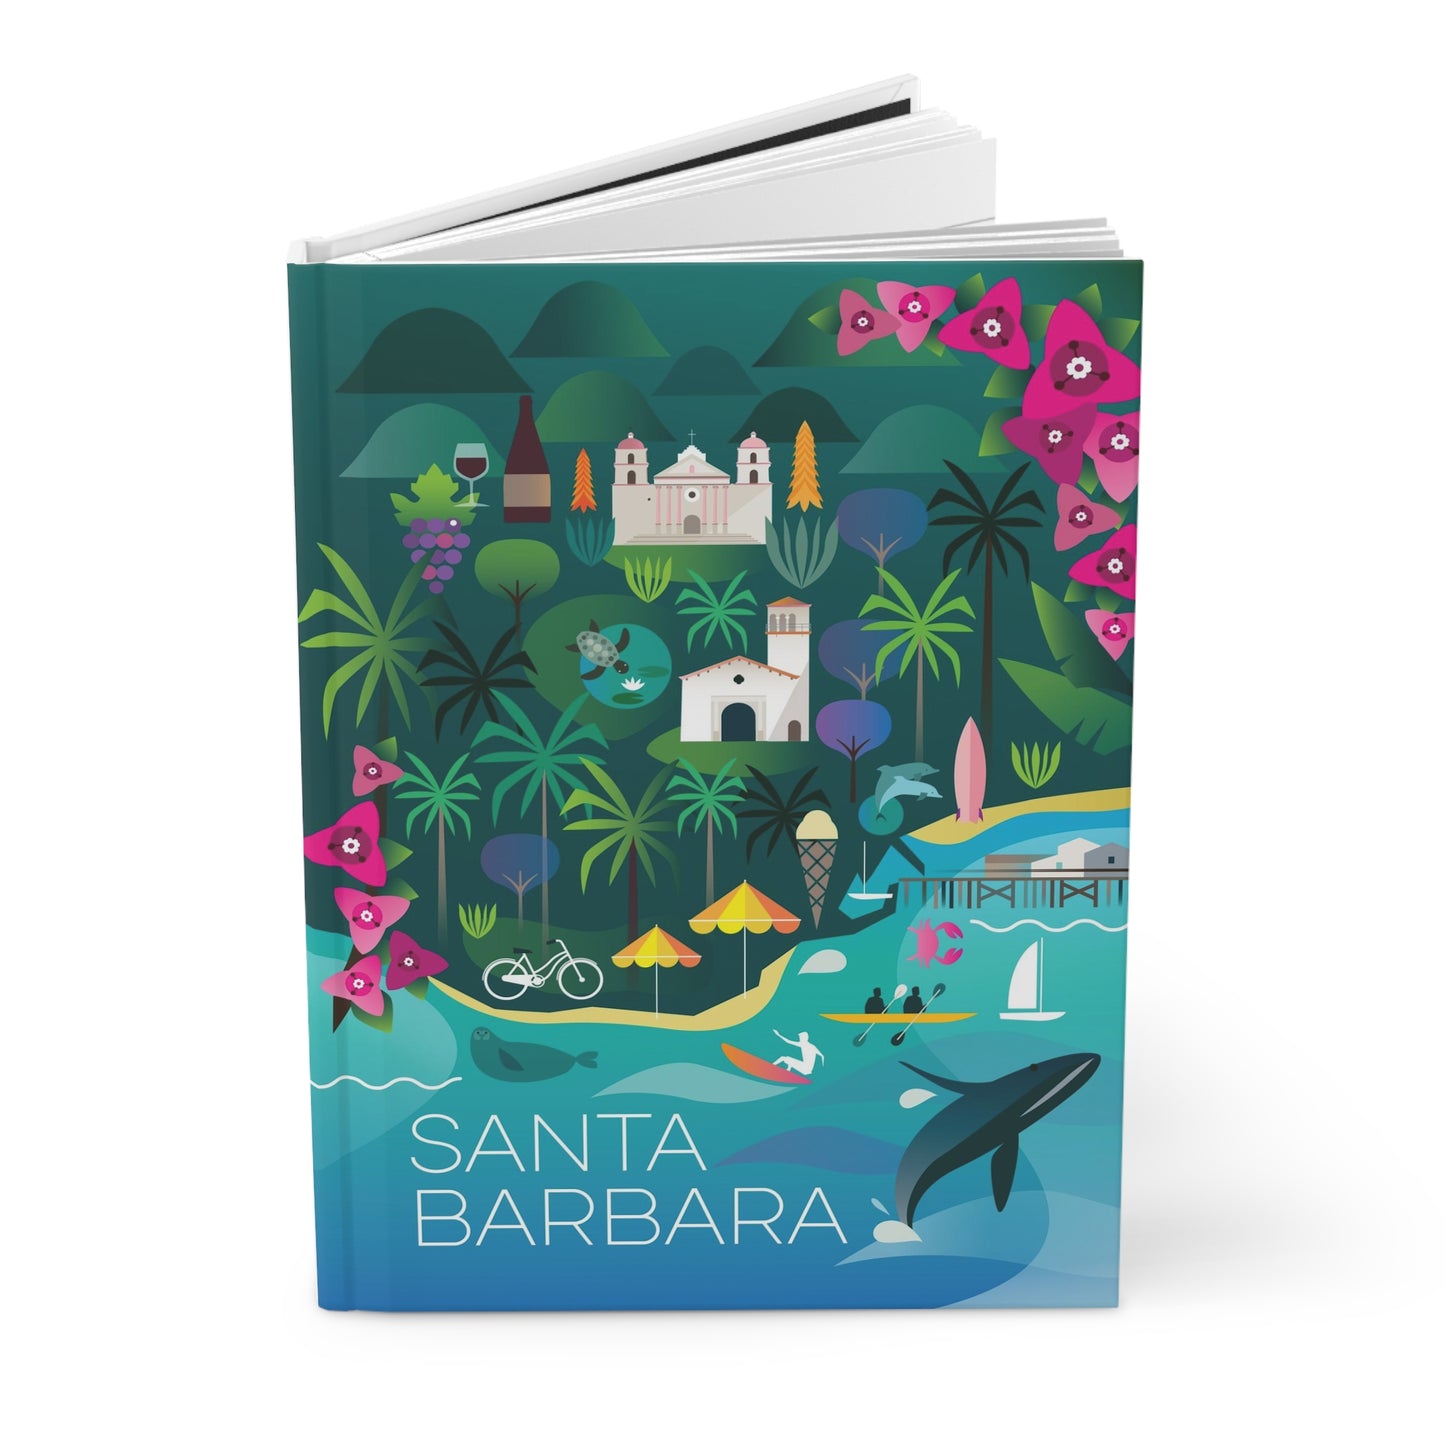 Santa Barbara Hardcover Journal